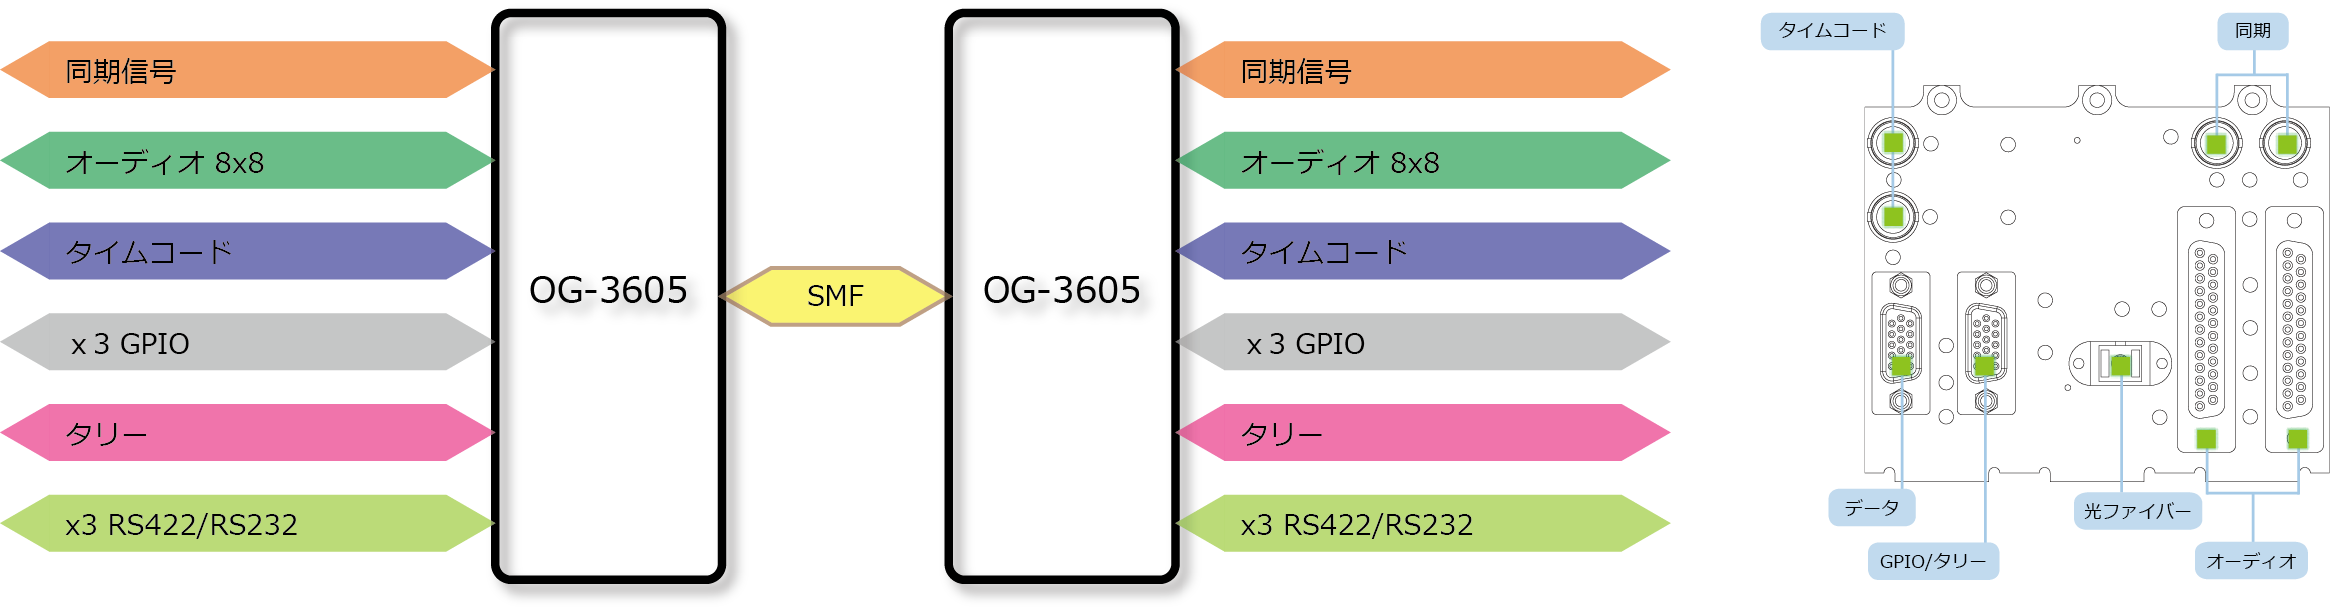 OG-3605 ブロック図/リアパネル図